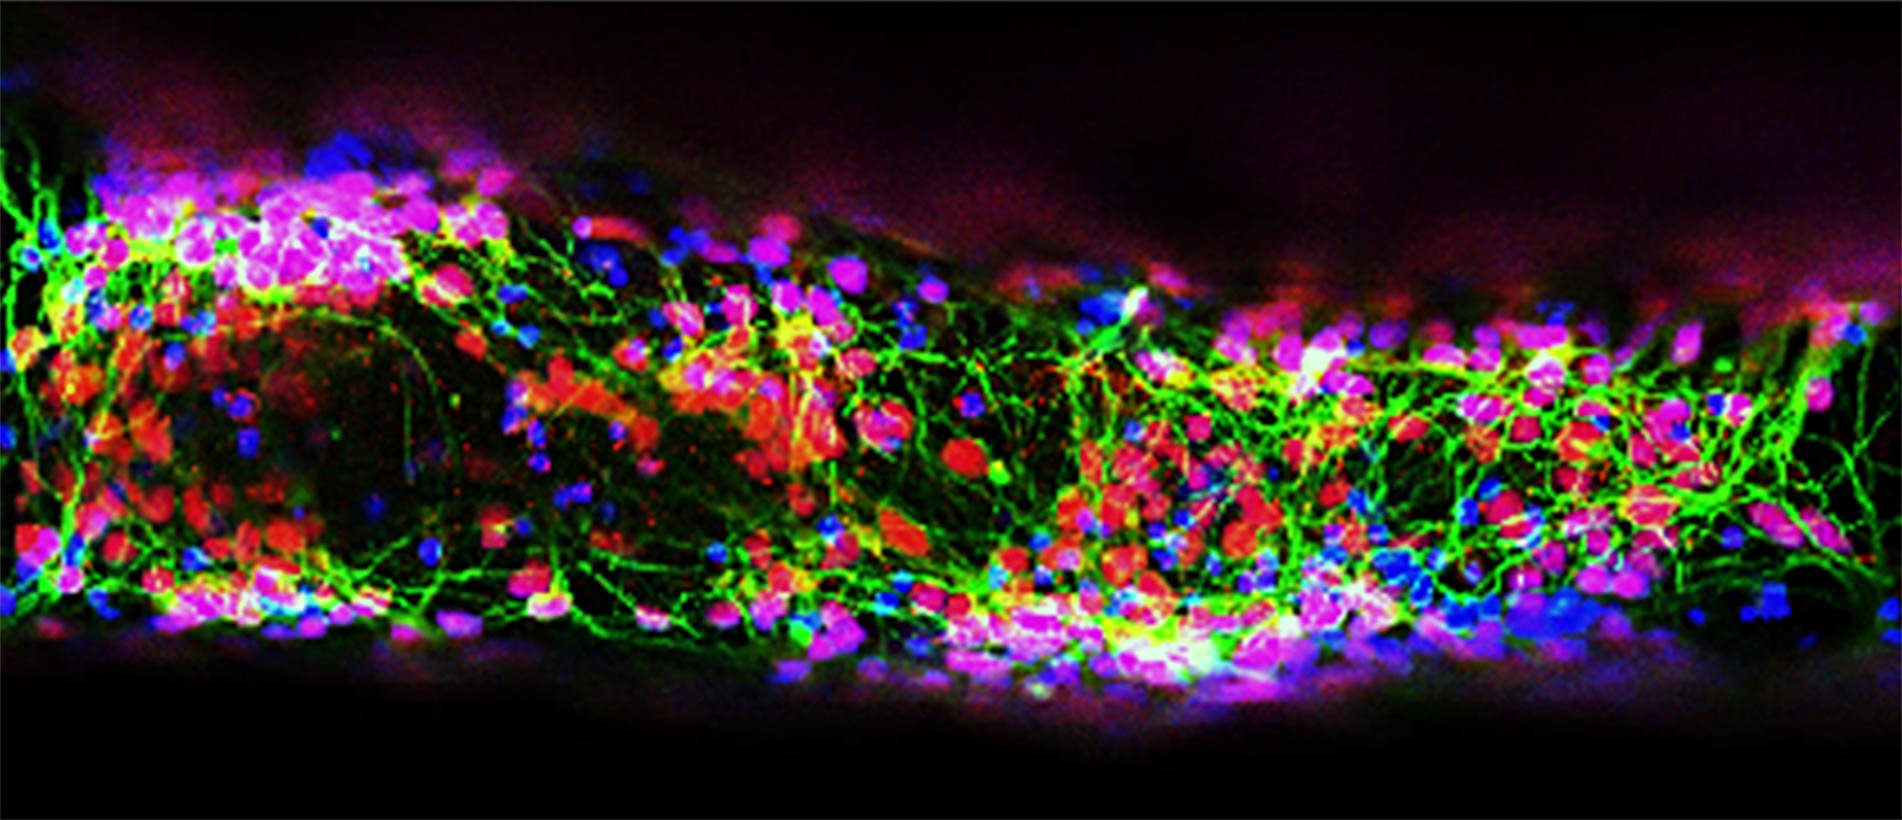 Это улучшенное изображение показывает живые клетки, которые пережили процесс 3D-печати. Нейронные стволовые клетки, полученные из взрослых человеческих клеток, были напечатаны на 3D-принтере, а после дифференцированы в активные нервные клетки в лаборатории.